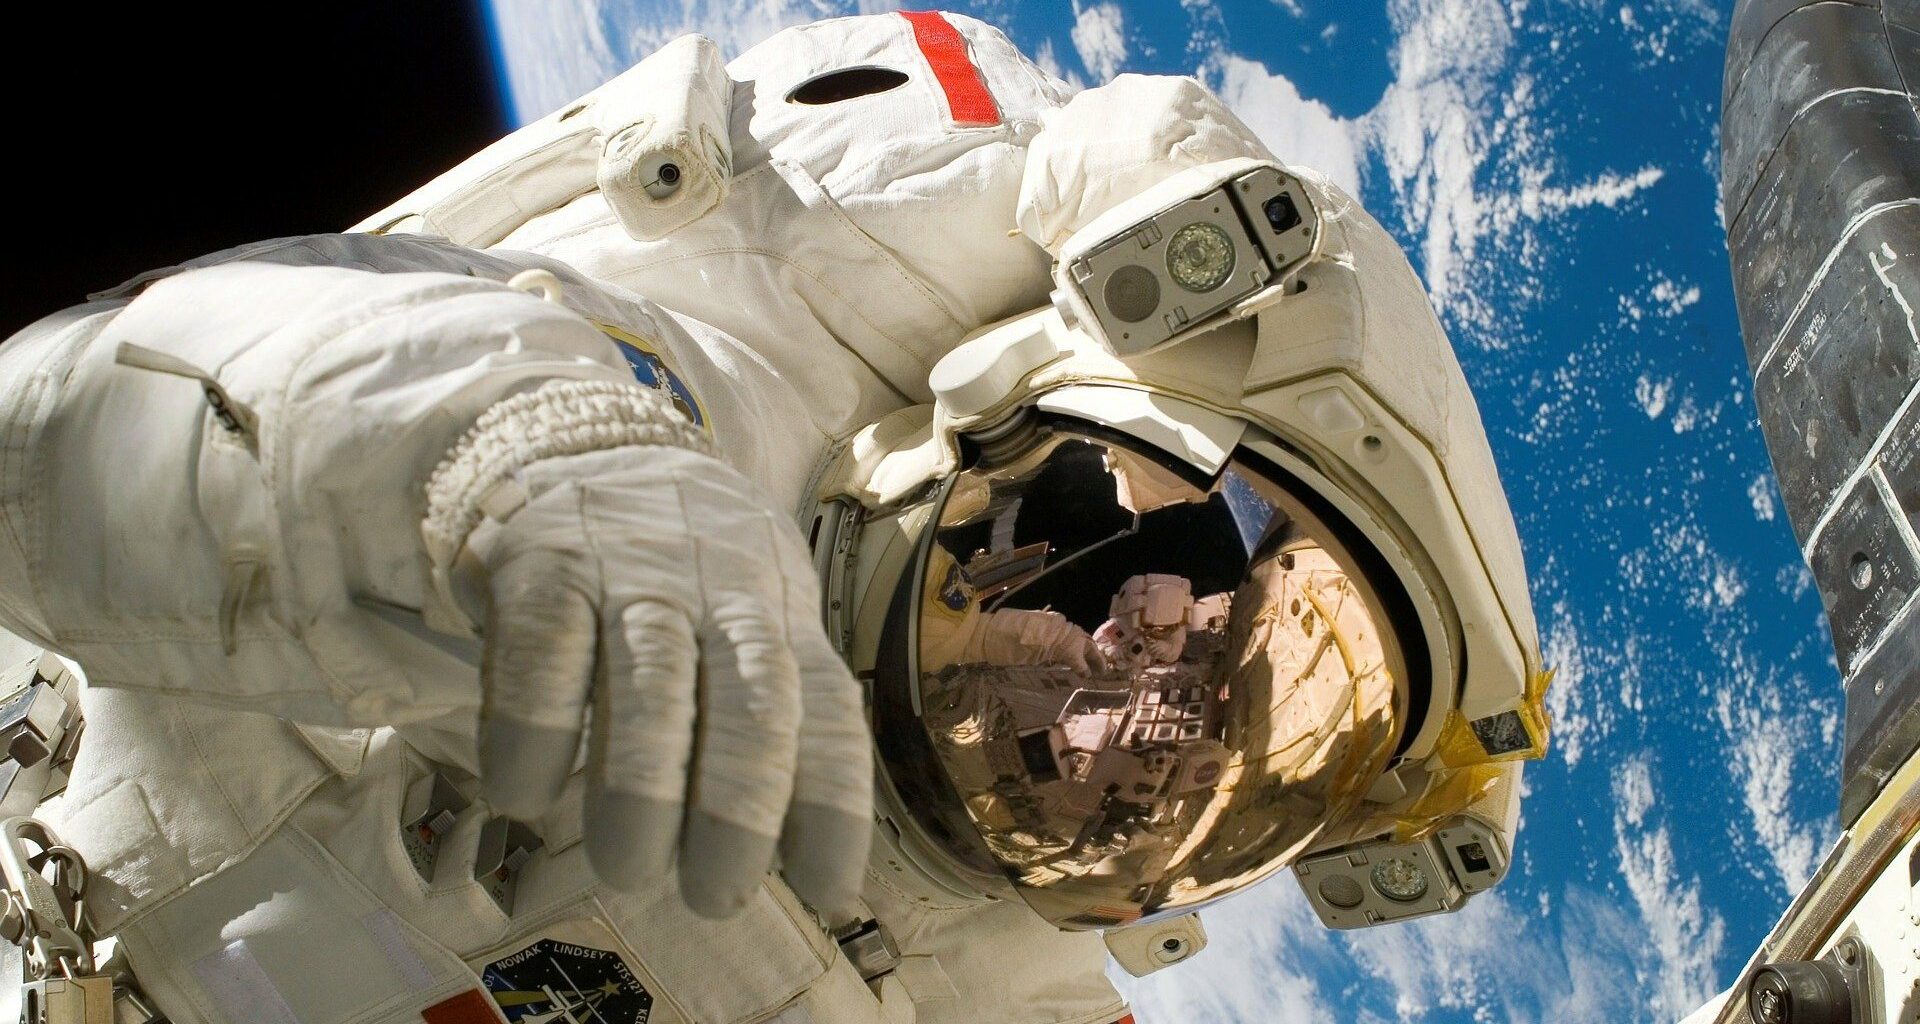 12 curiosidades sobre trajes espaciais que você jamais imaginou. Não é novidade que os trajes espaciais servem para proteção do corpo humano, mas, além disso, para quê eles servem?